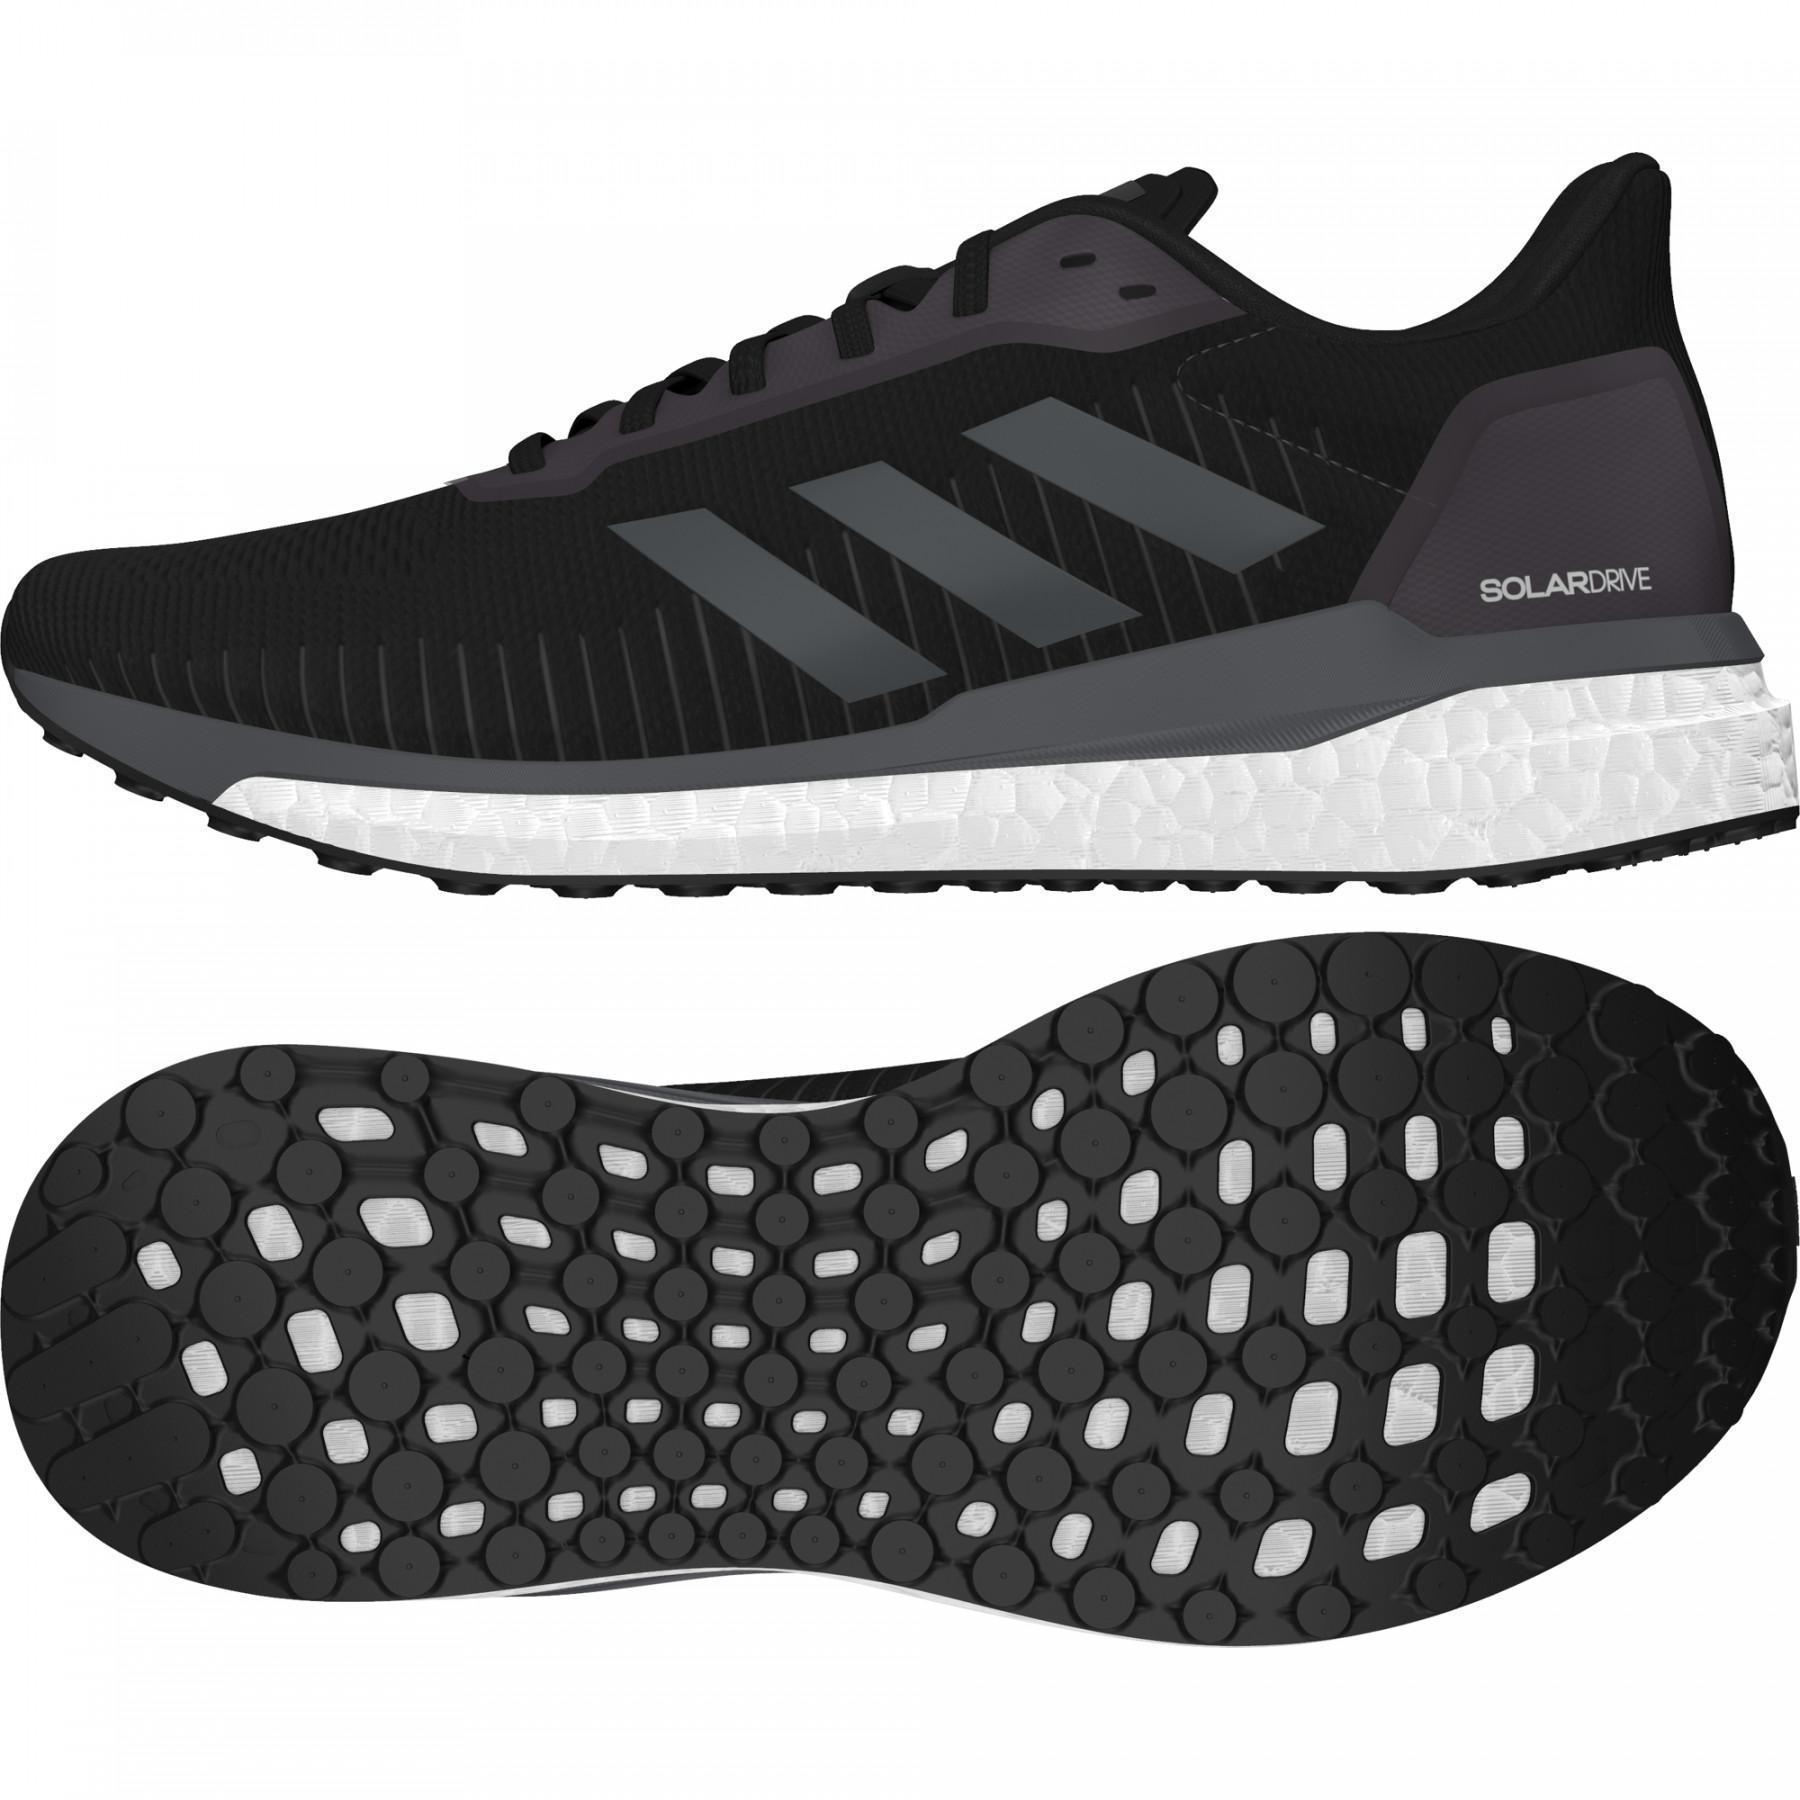 Chaussures de running adidas Solar Drive 19